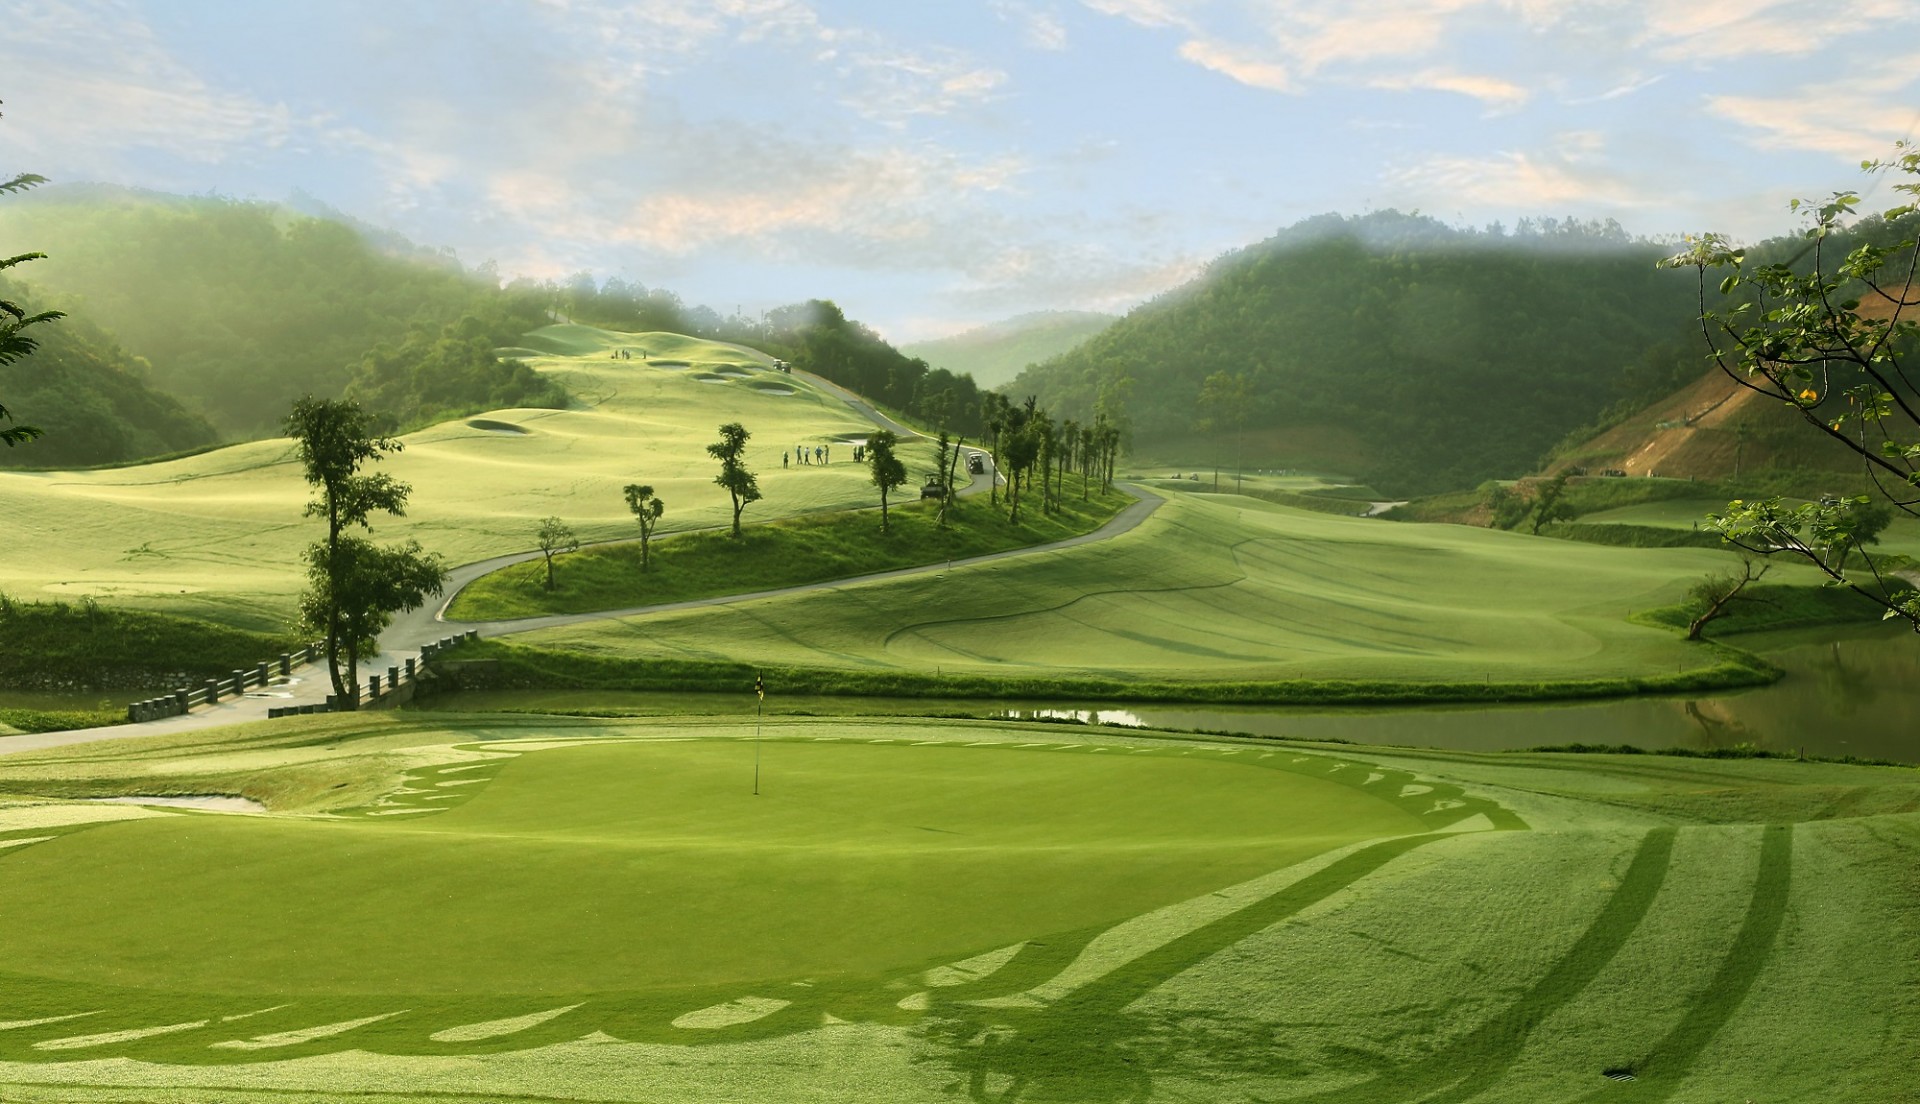 Geleximco Hilltop Valley Golf Club được giới chuyên môn đánh giá là một trong những sân golf có địa hình khó và đẹp nhất Việt Nam.